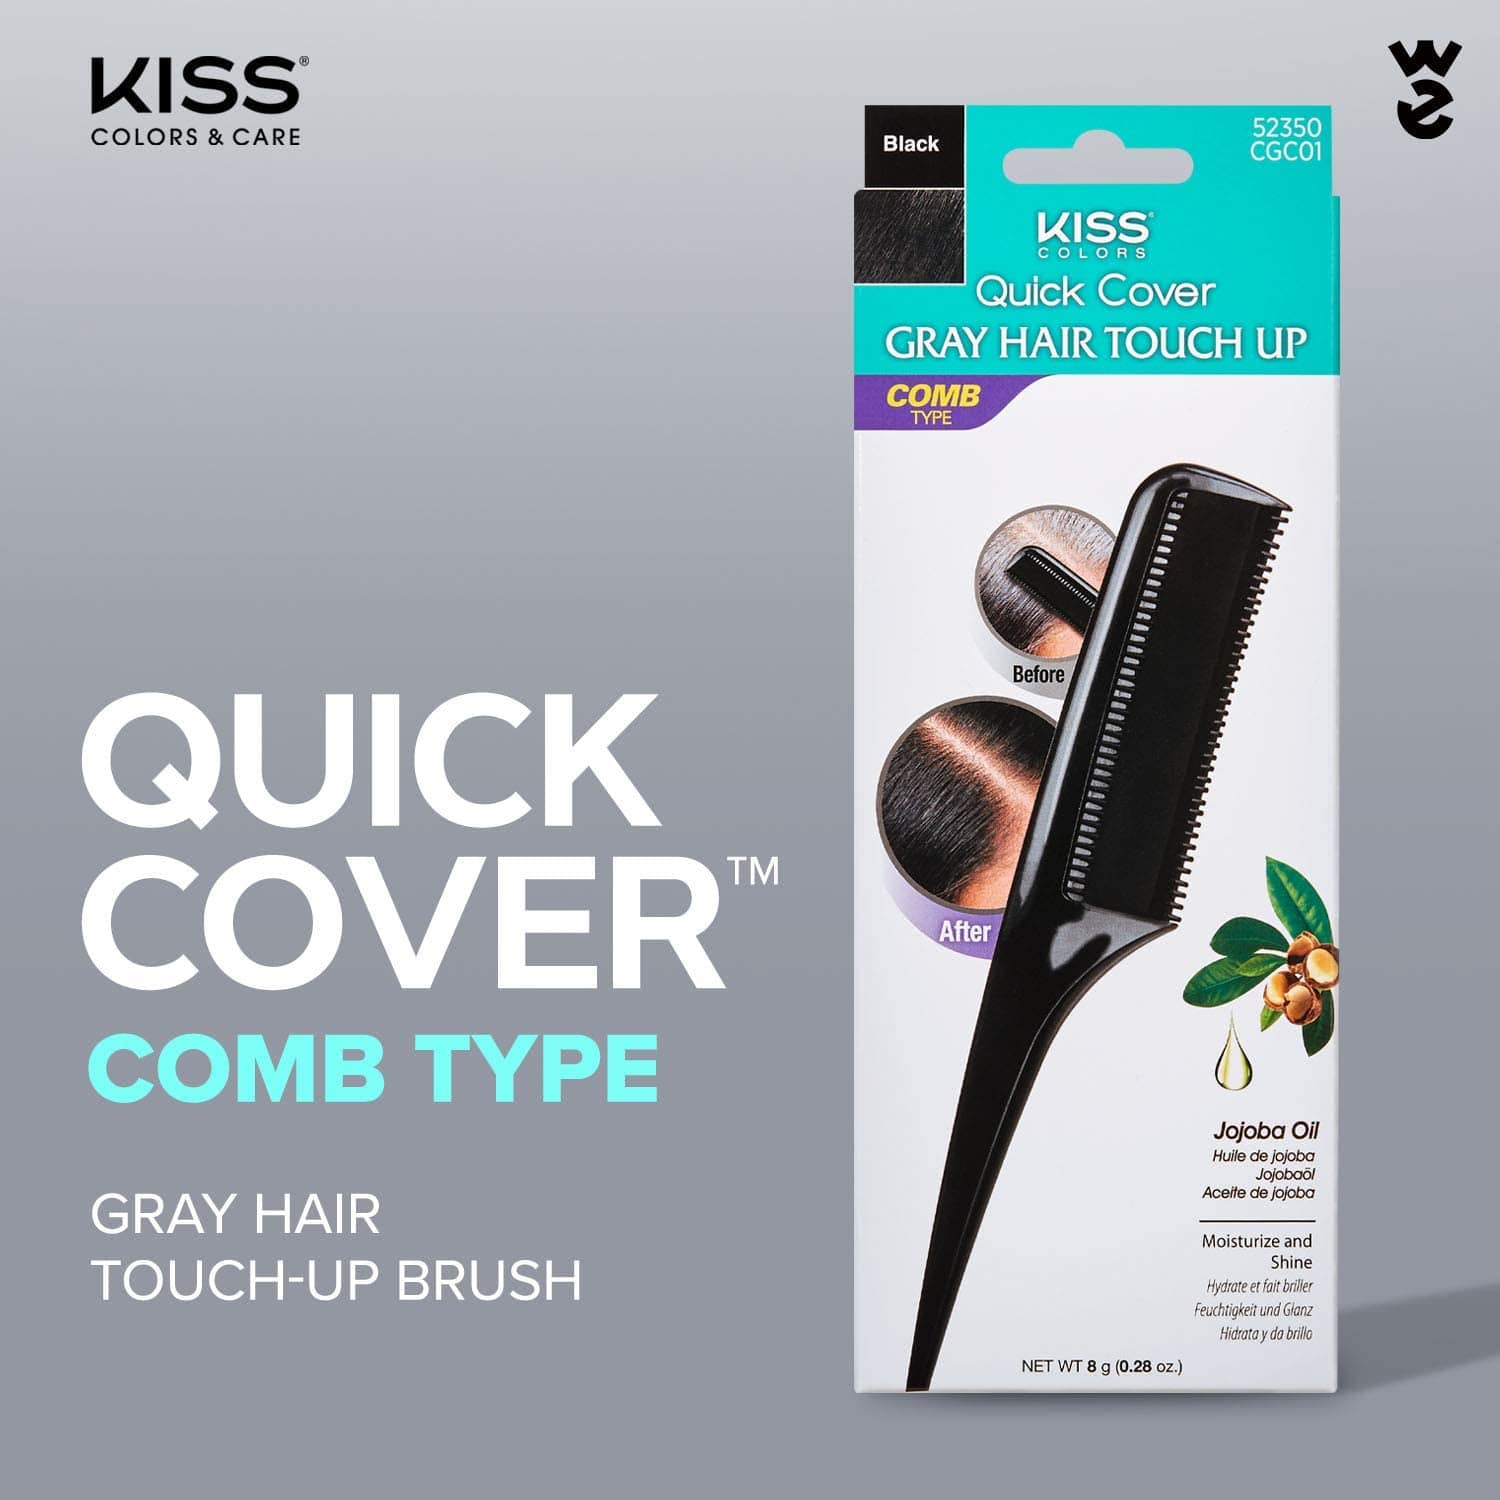 Kiss Quick Cover - Peigne à cheveux colorant & couvrant cheveux blancs "Kiss Quick Cover Gray Hair Touch Up Comb" - 20g Plusieurs couleurs - Kiss Quick Cover - Ethni Beauty Market